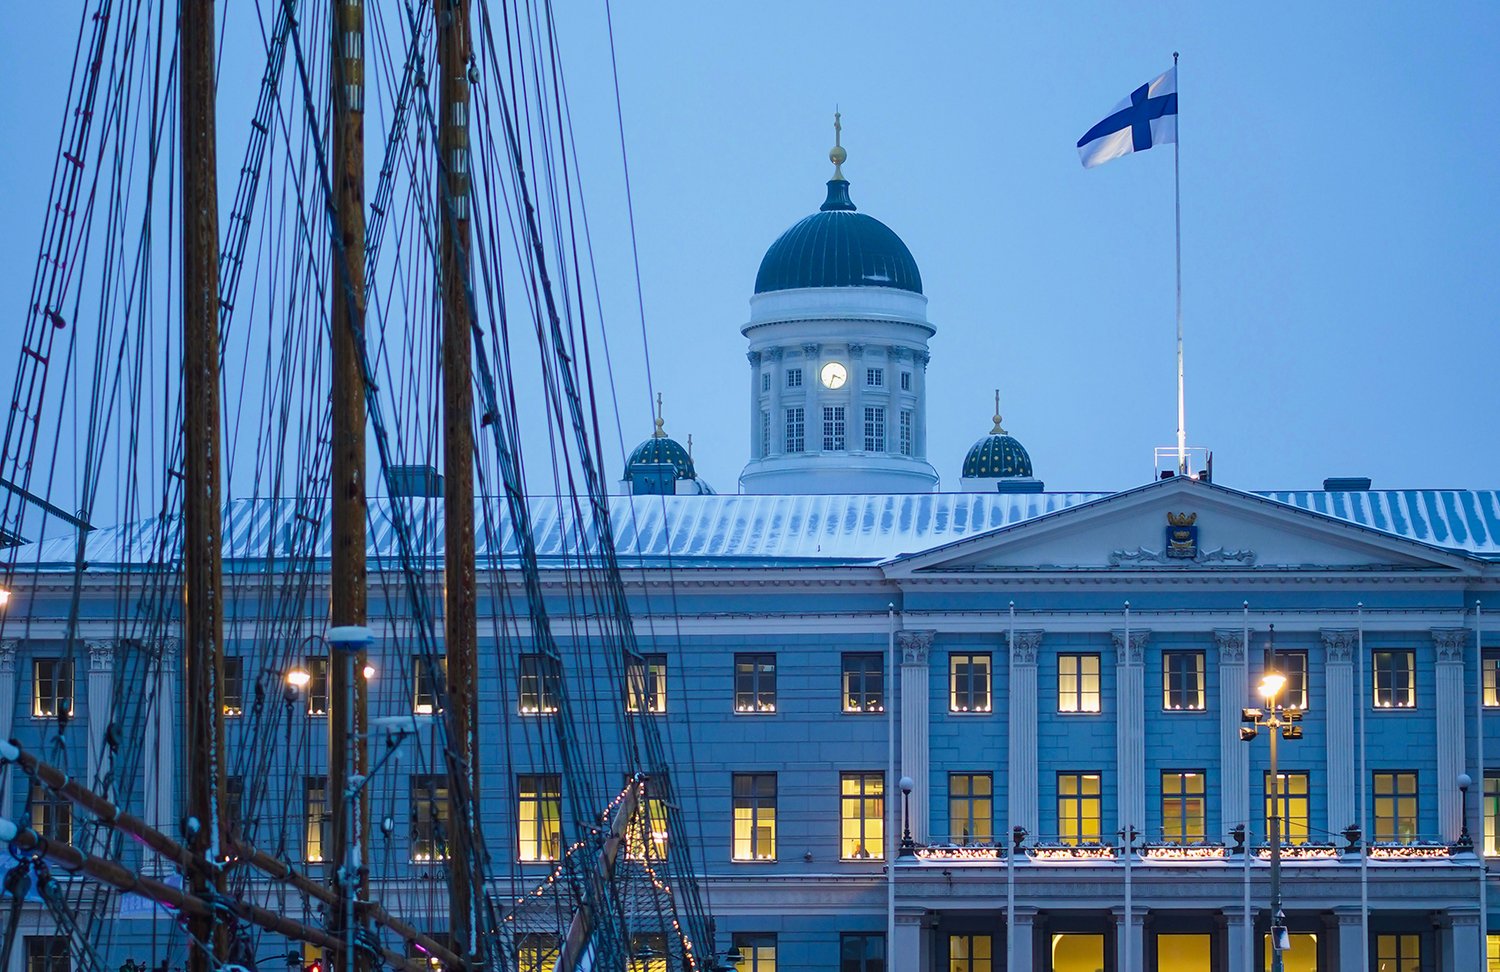 En kvällsbild av Helsingfors stadshus där det lyser i fönstren. På taket vajar Finlands flagga och bakom stadshuset syns domkyrkans torn. I förgrunden ser man masterna från en segelbåt.